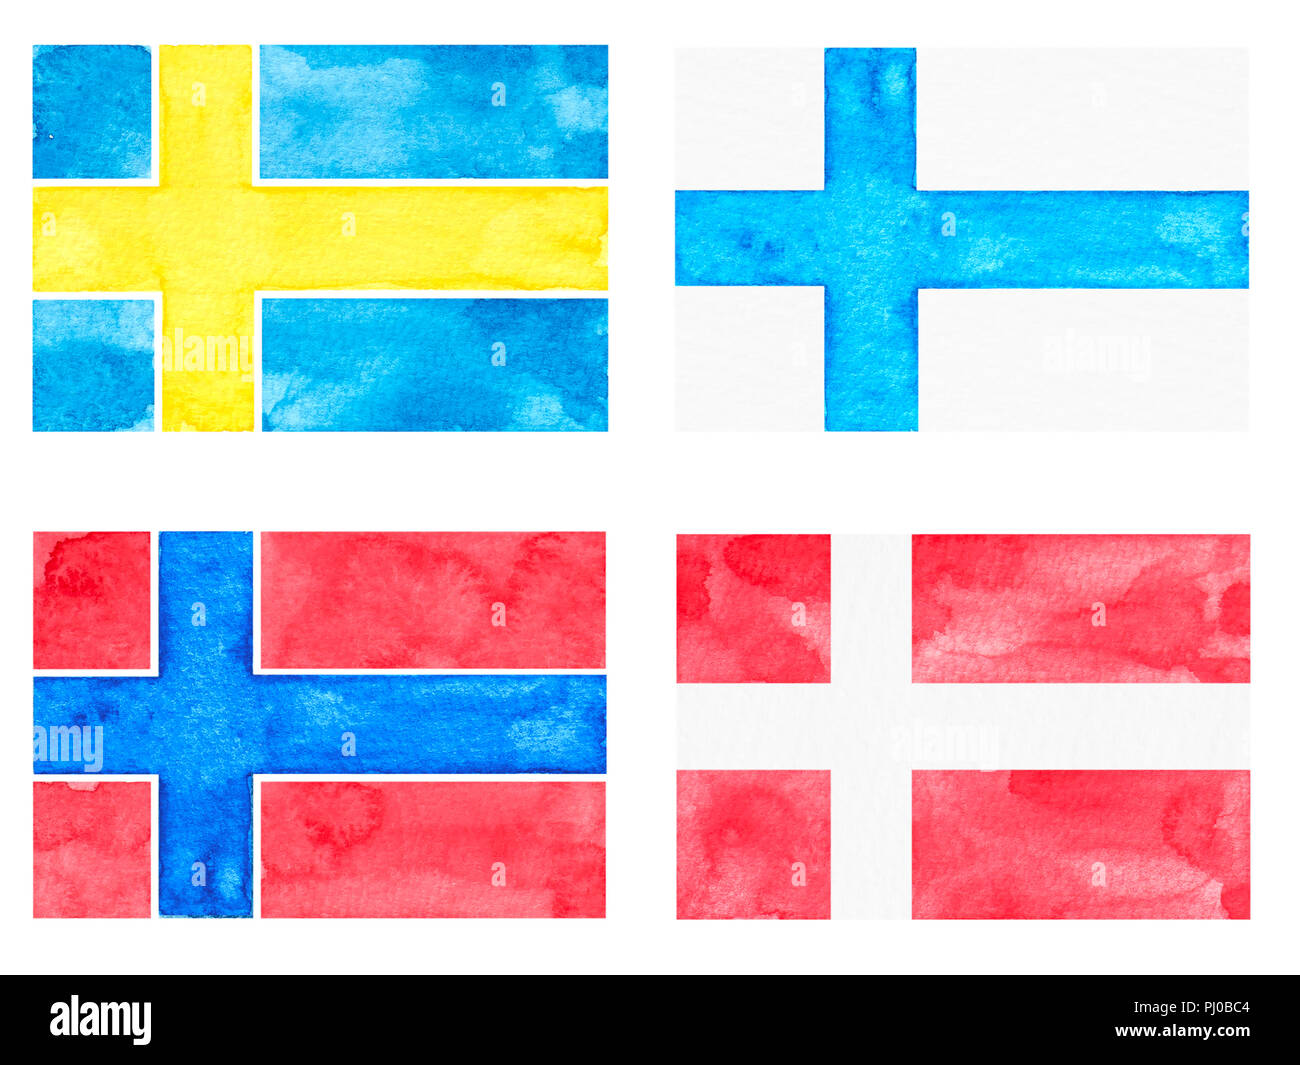 Ensemble de drapeaux à l'Aquarelle. Pays : Danemark, Norvège, Finlande, Suède. Peint et dessiné à la main Banque D'Images